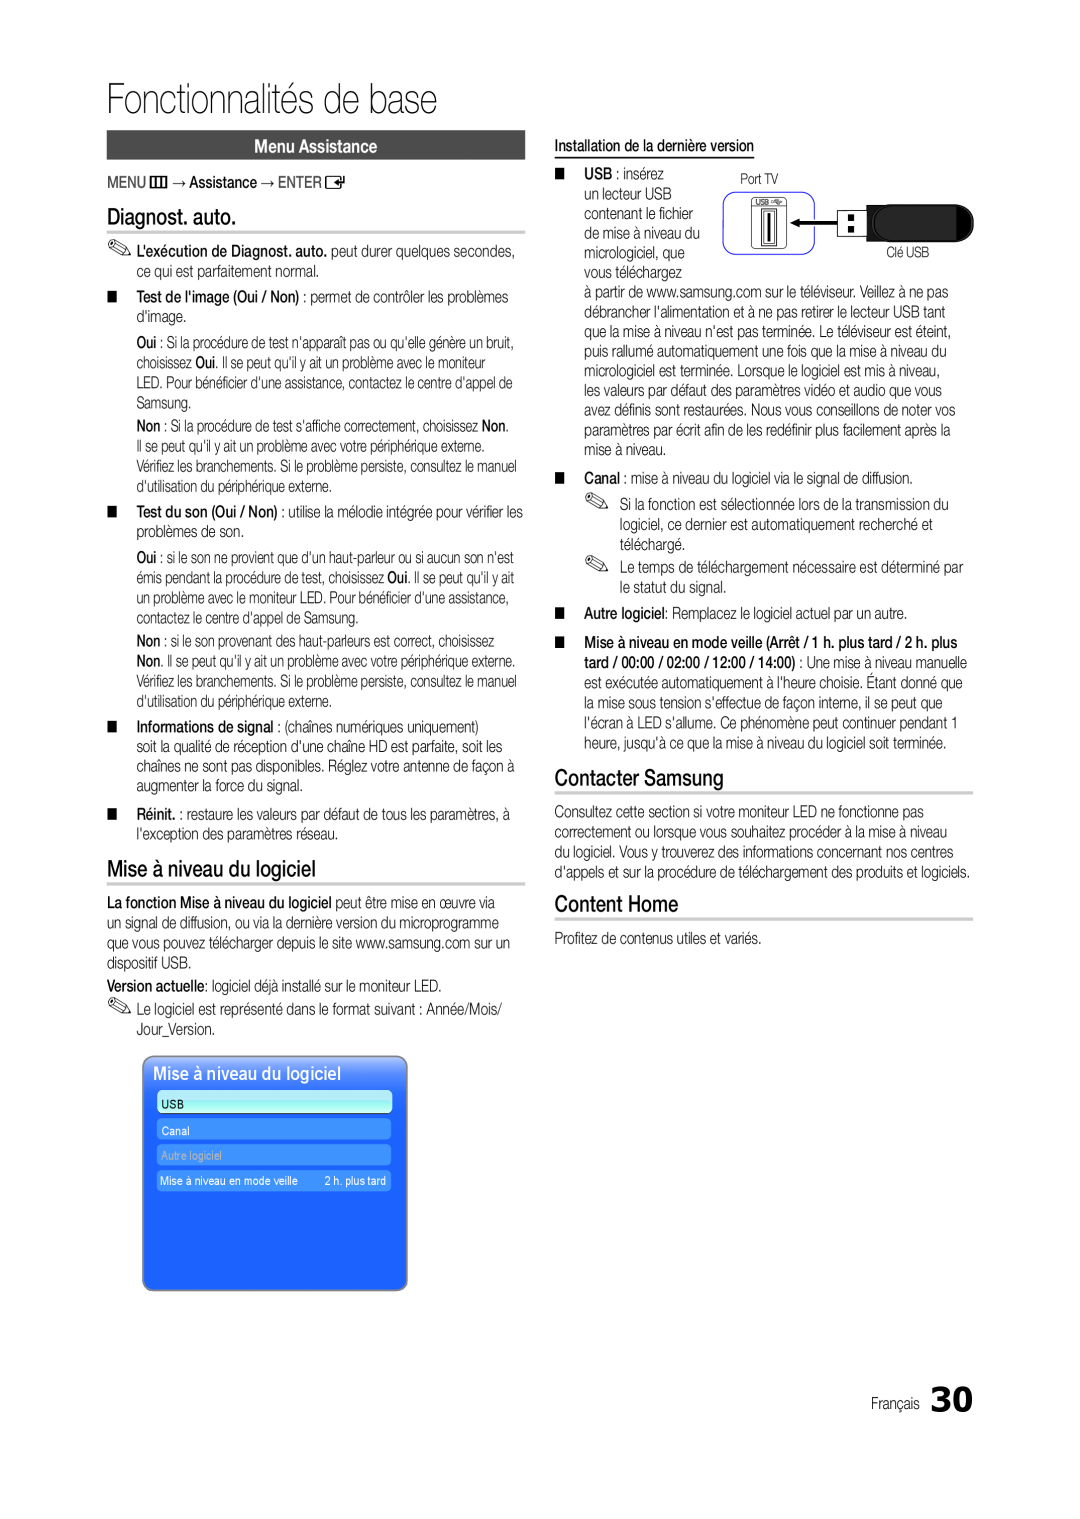 Samsung LT24C300EWZ/EN manual Diagnost. auto, Mise à niveau du logiciel, Contacter Samsung, Content Home, Menu Assistance 